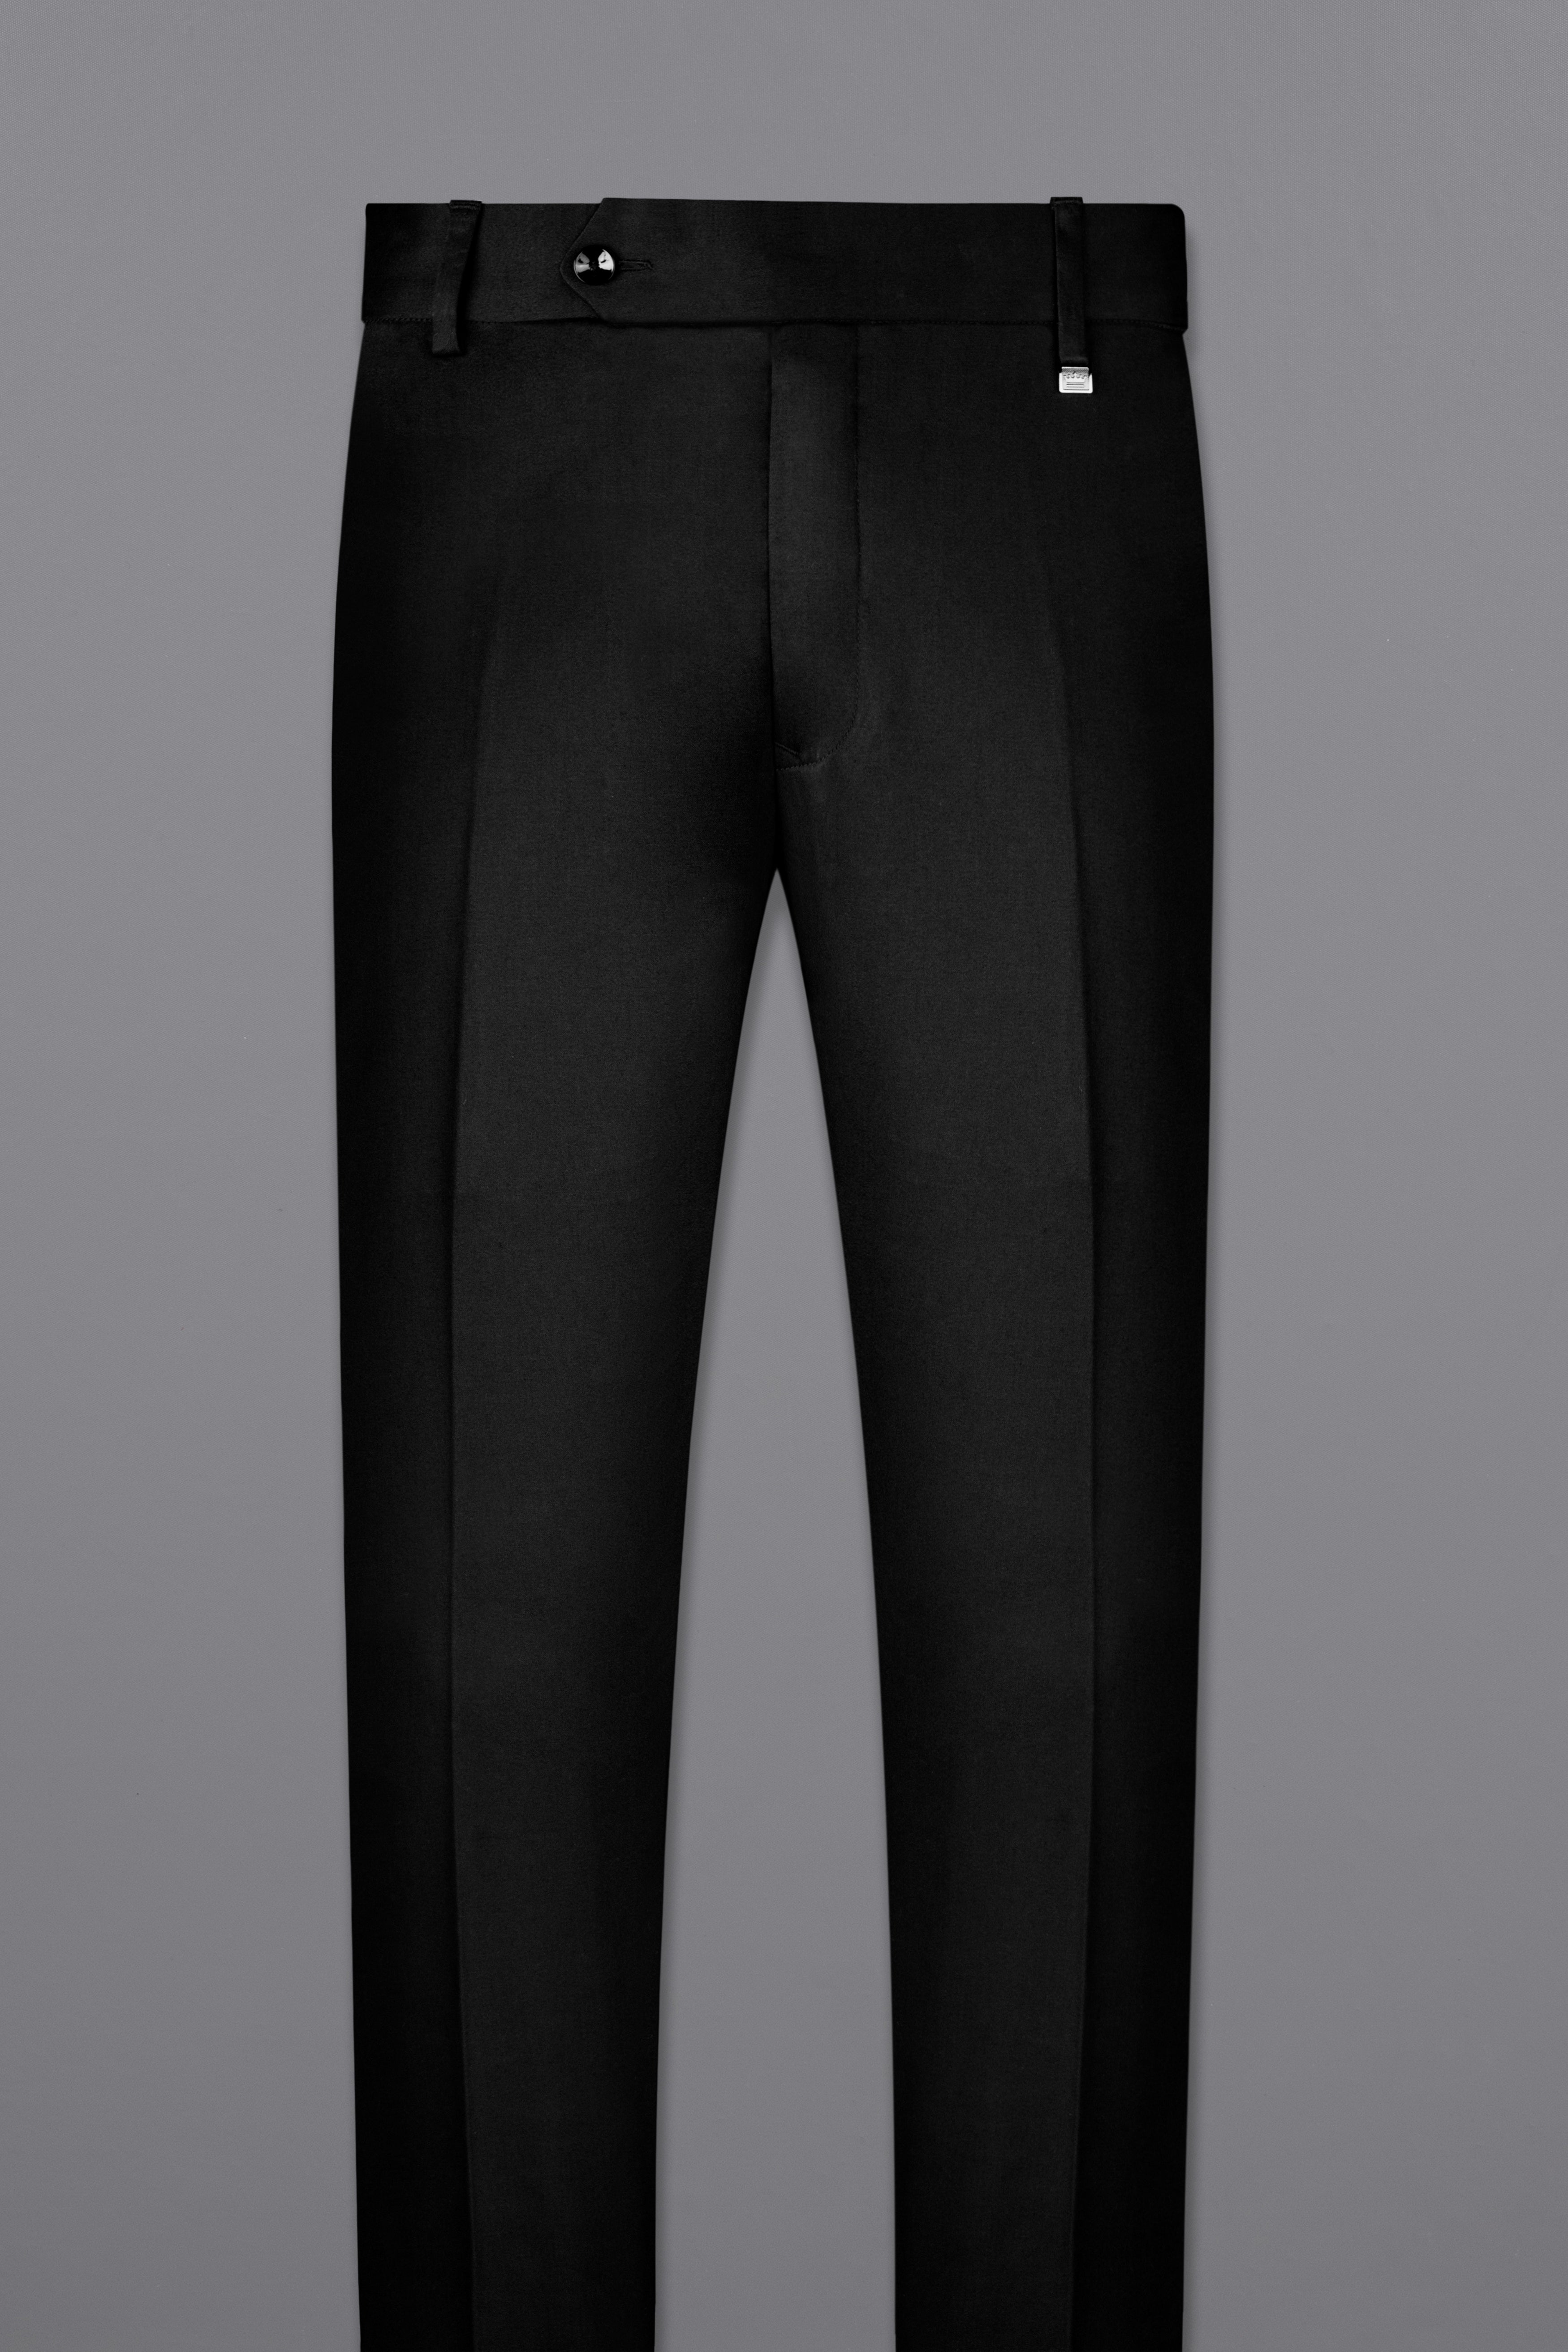 Jade Black Stretchable Premium Cotton Tuxedo traveler Suit